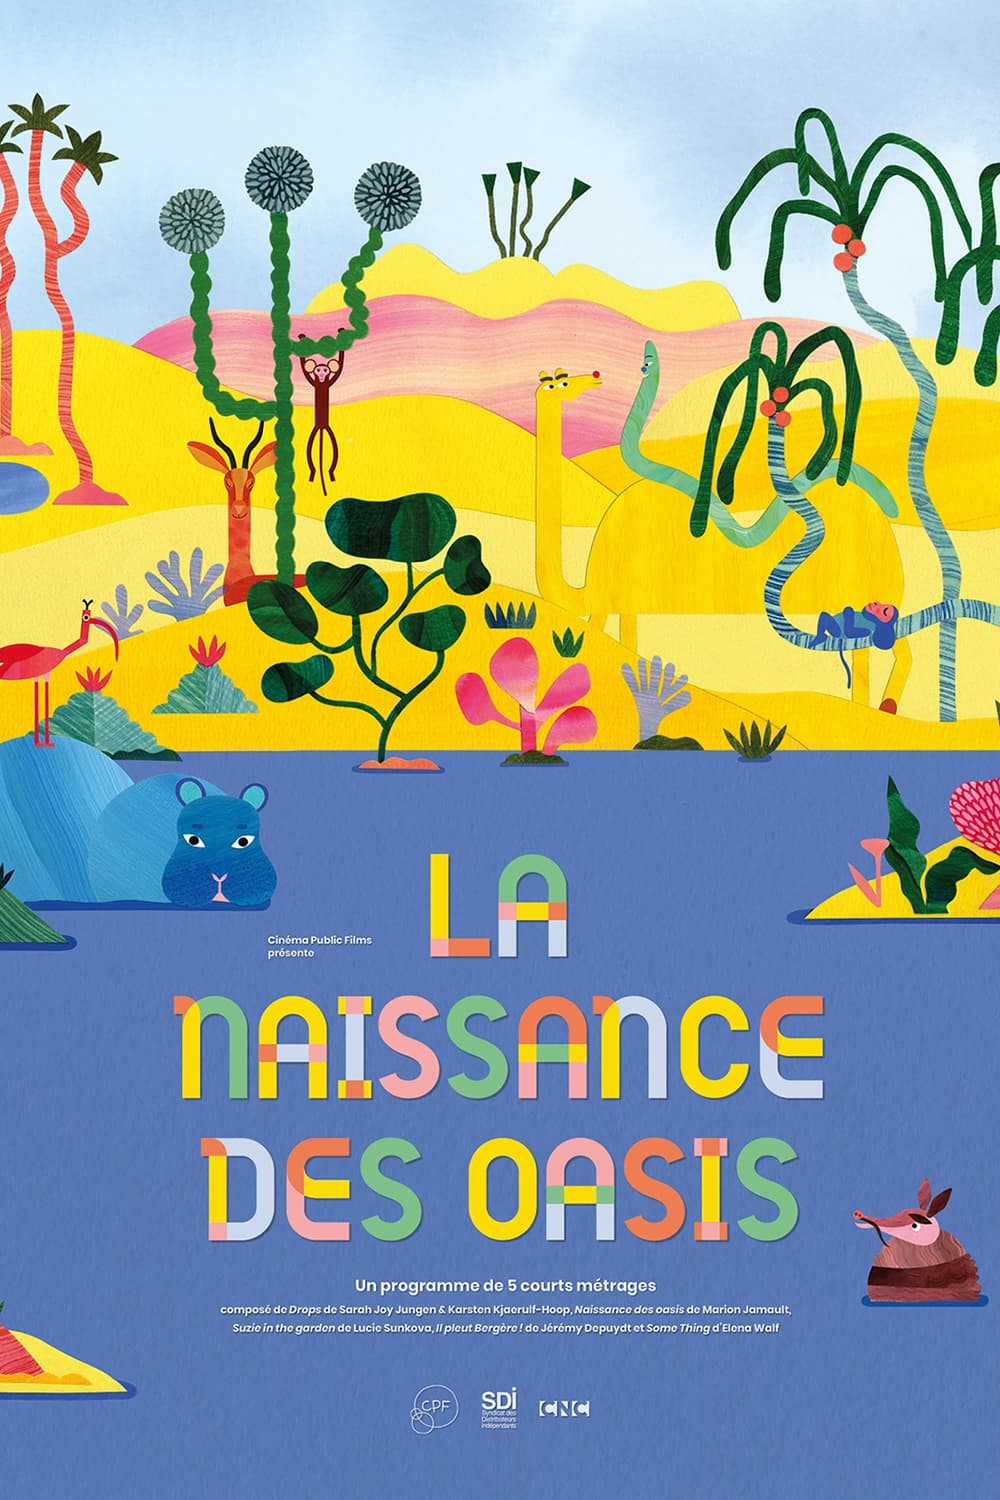 Caratula de Naissance des oasis (El naixement dels oasis) 